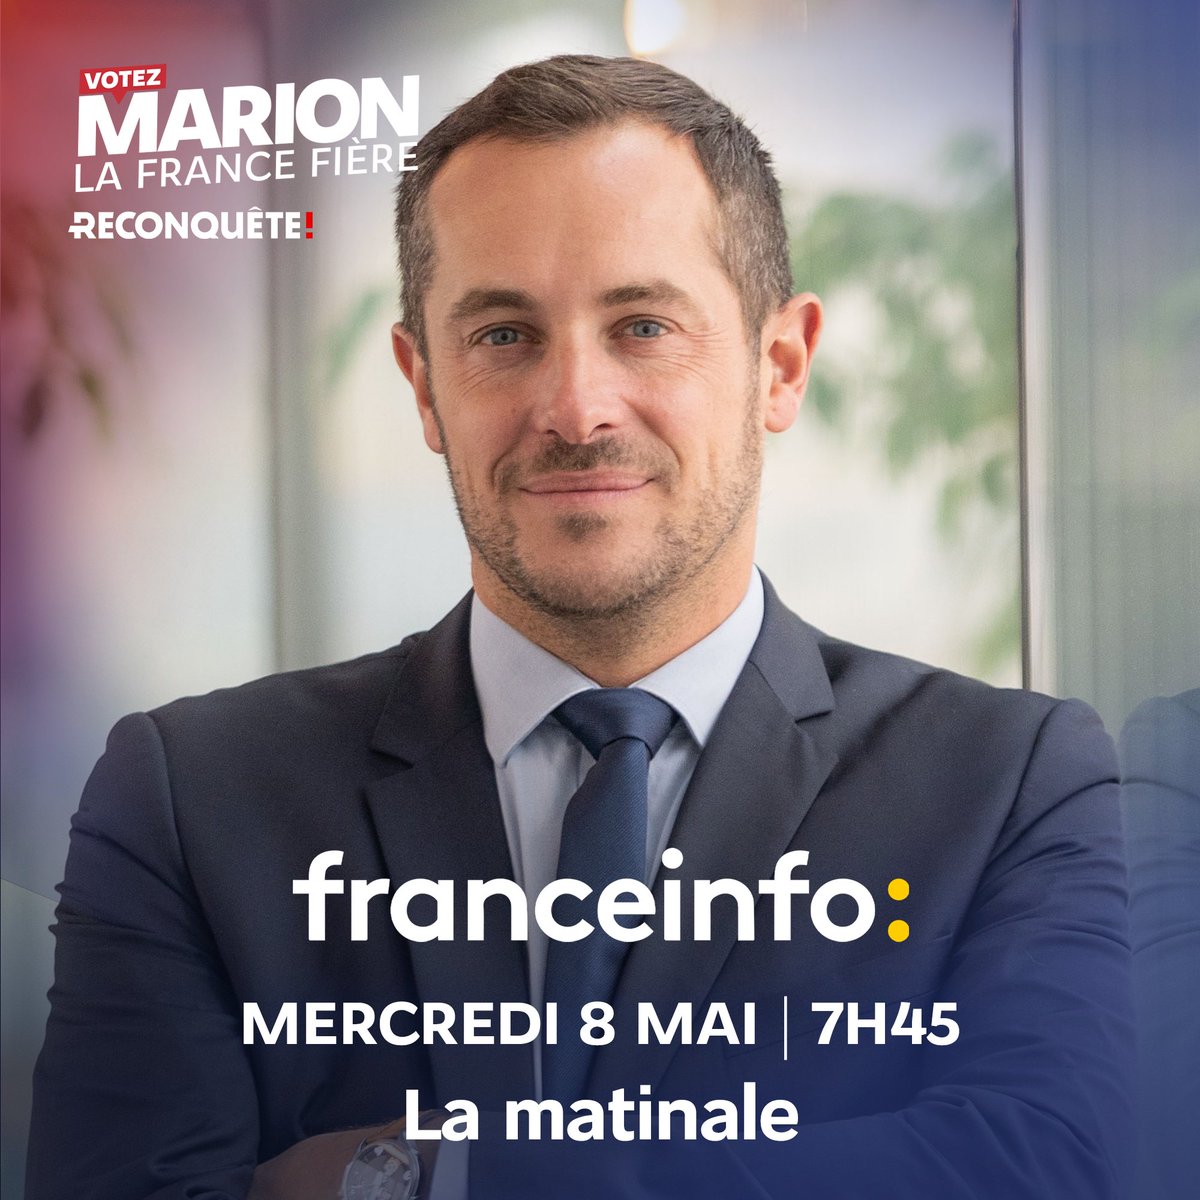 Je vous retrouve demain à 7h45 dans la matinale de @franceinfo avant d’aller en Normandie pour la cérémonie du 8 mai. 

#VotezMarion